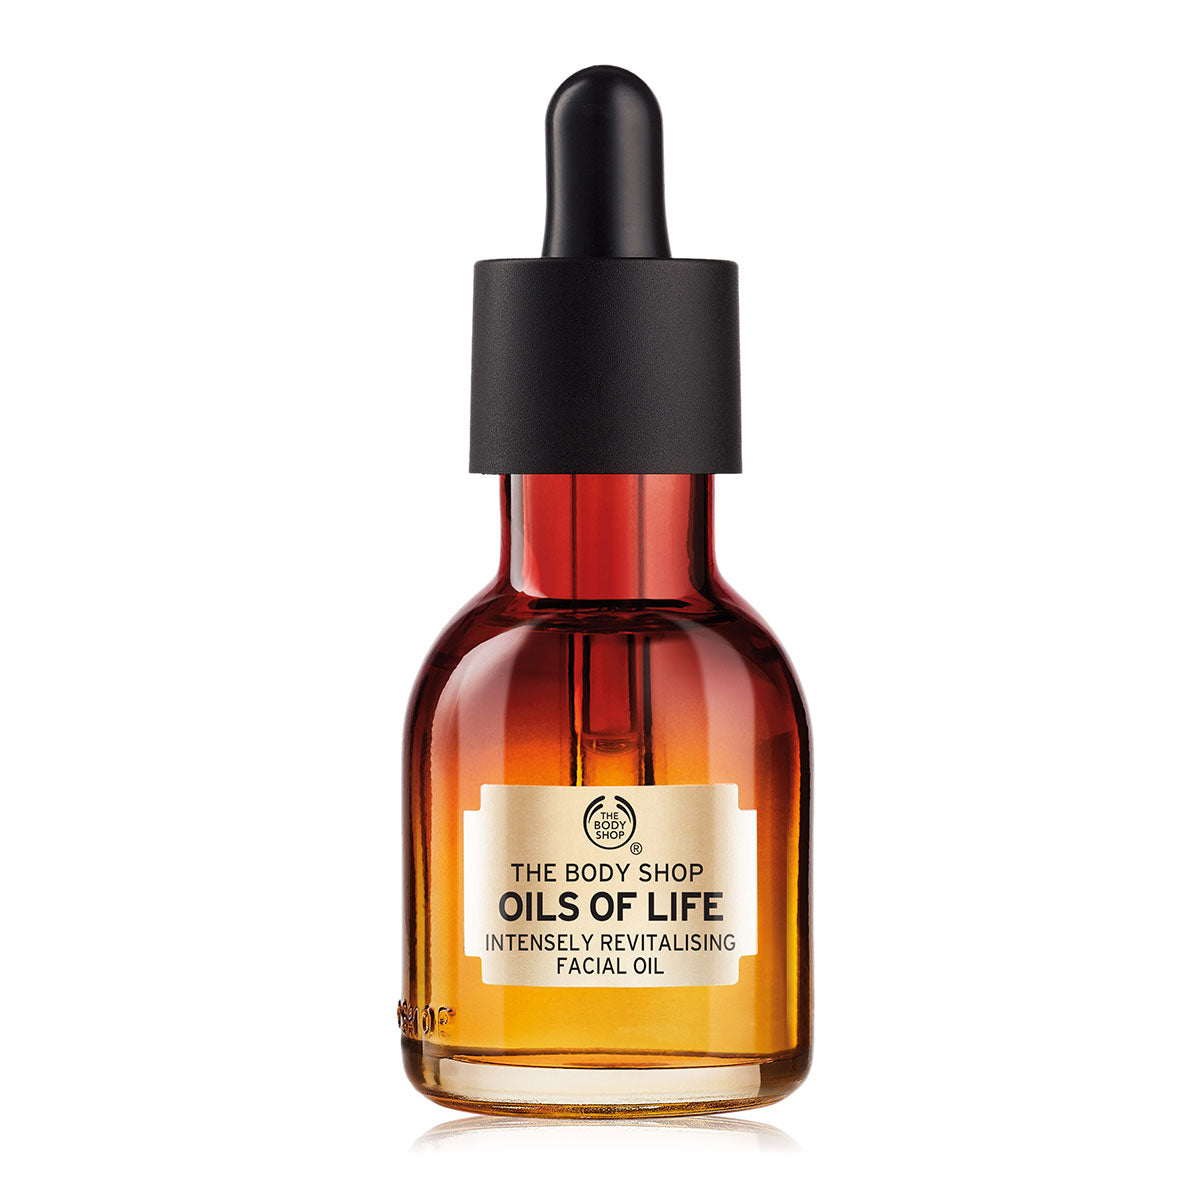 The Body Shop Oils of Life Facial Oil